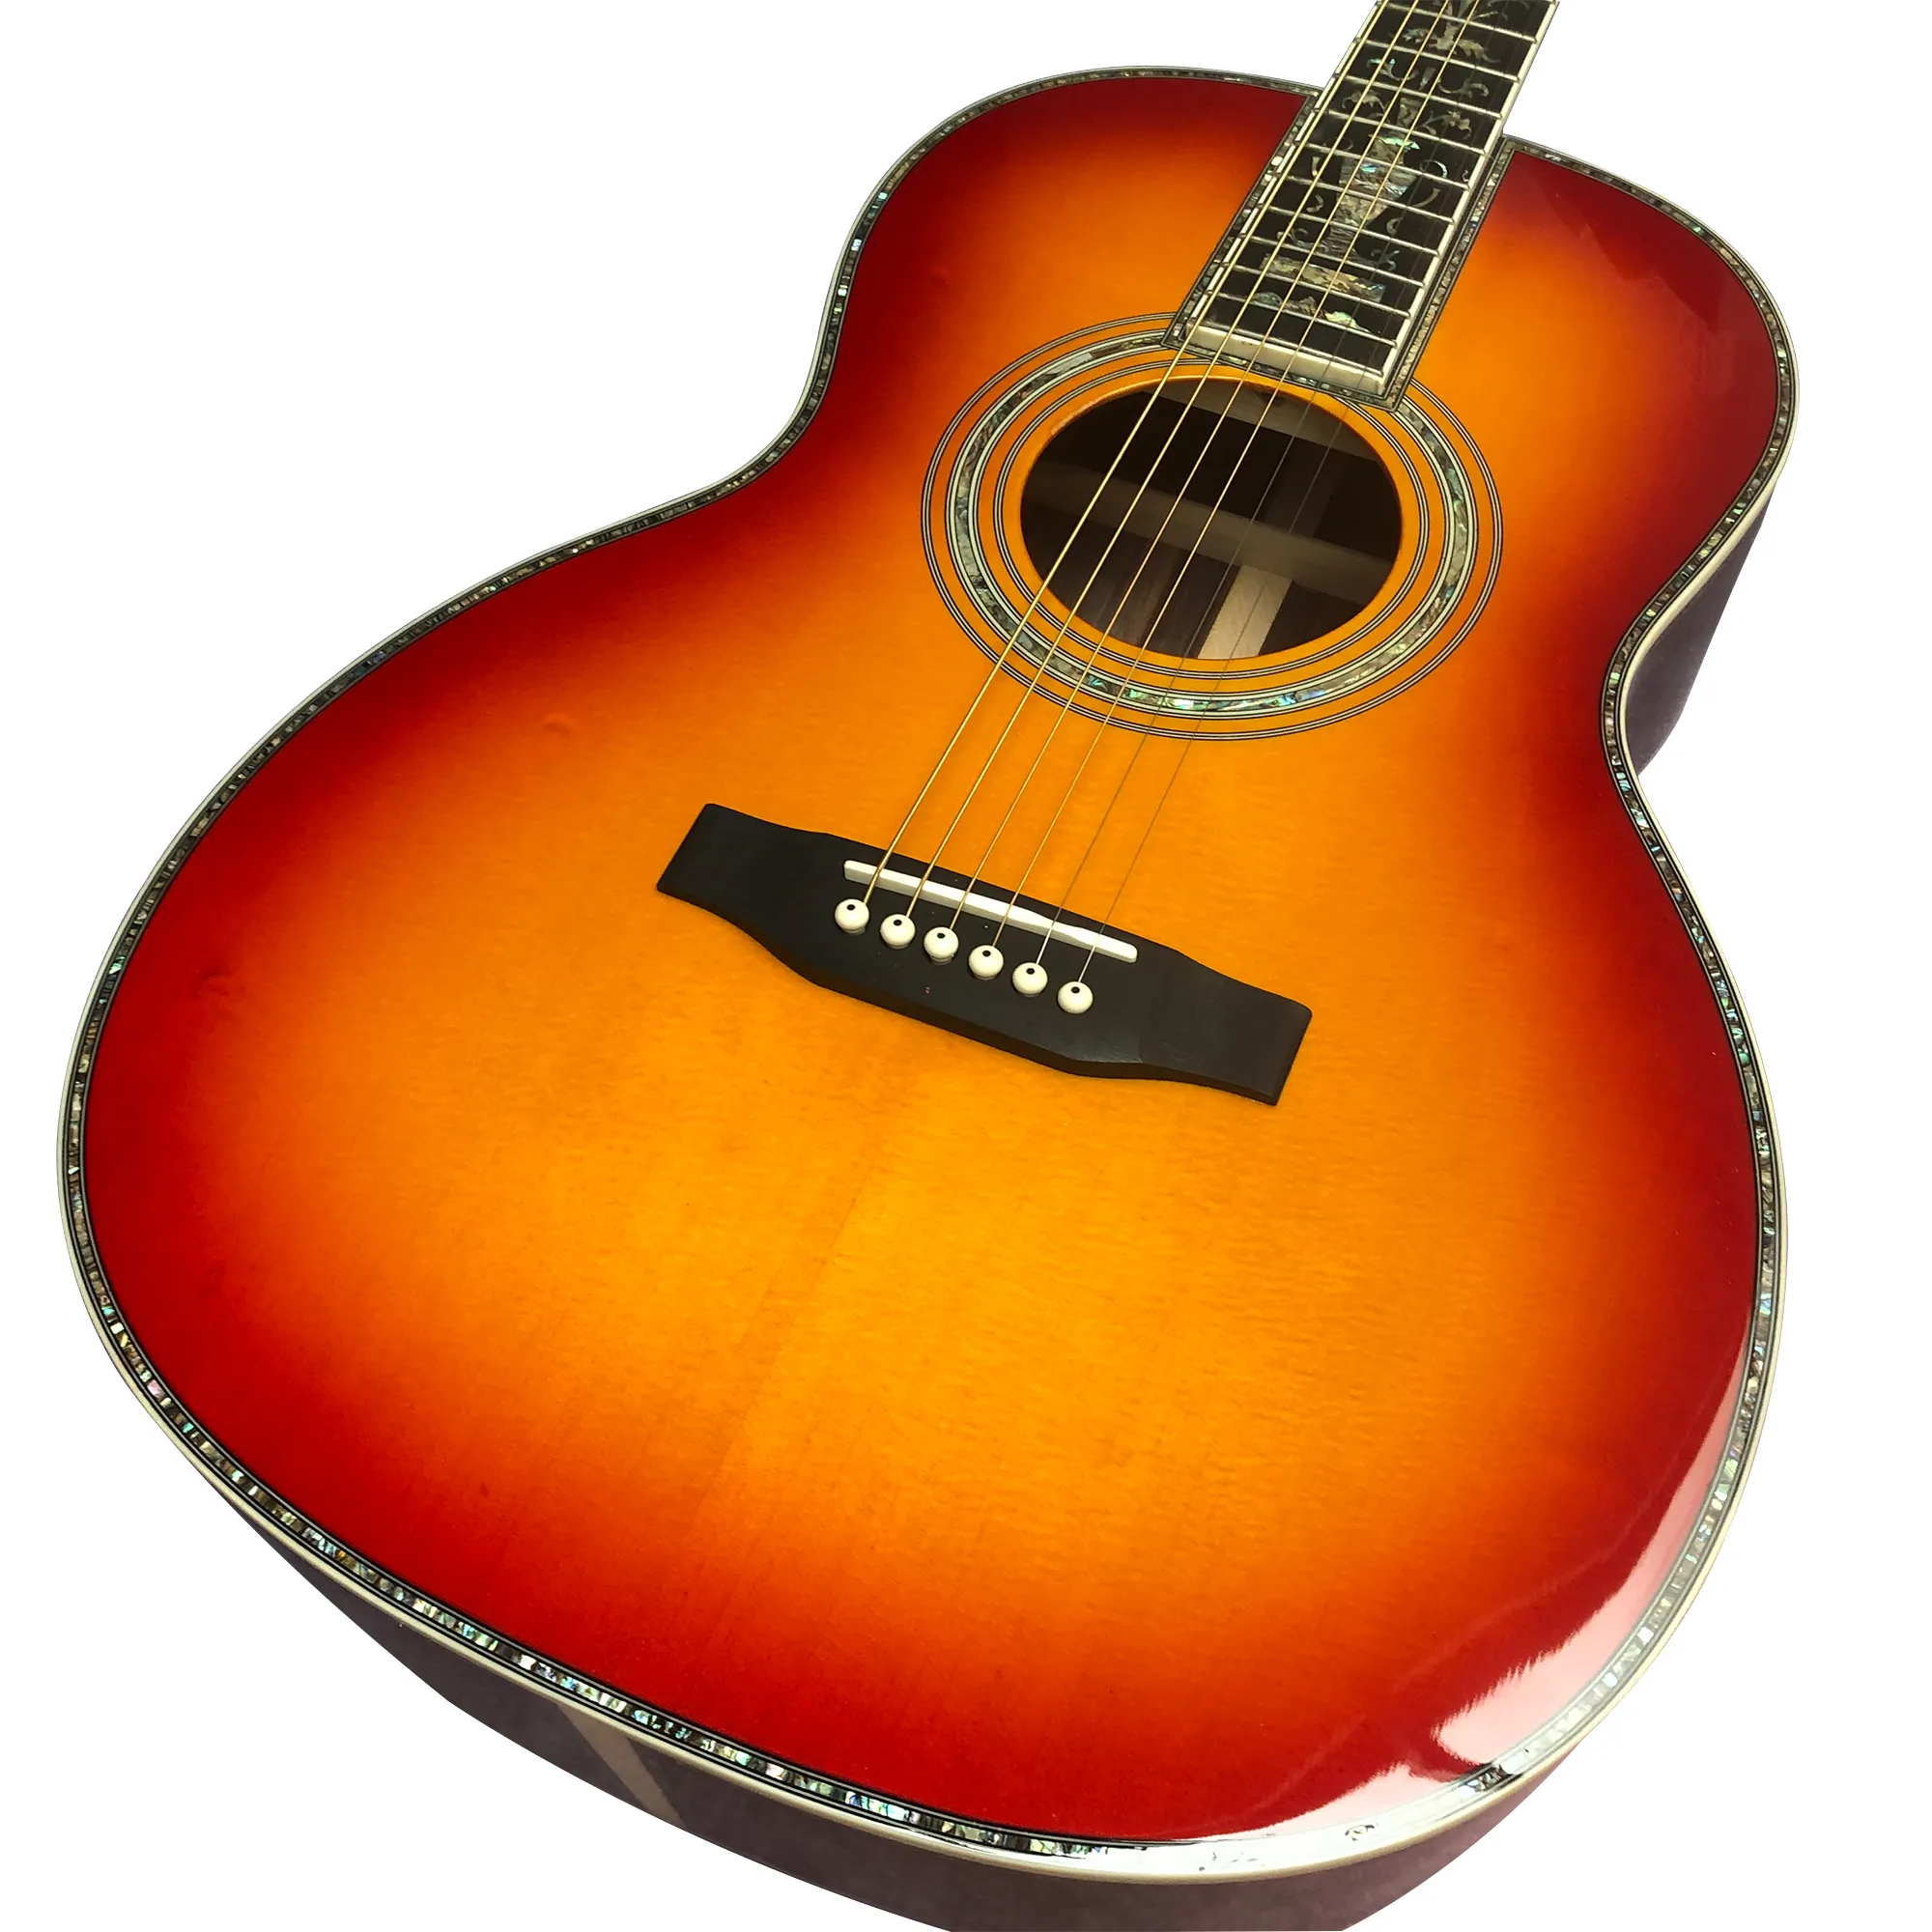 39 inç ooo kalıp gün batımı kırmızı siyah parmaklı abalon kabuk kakma akustik gitar